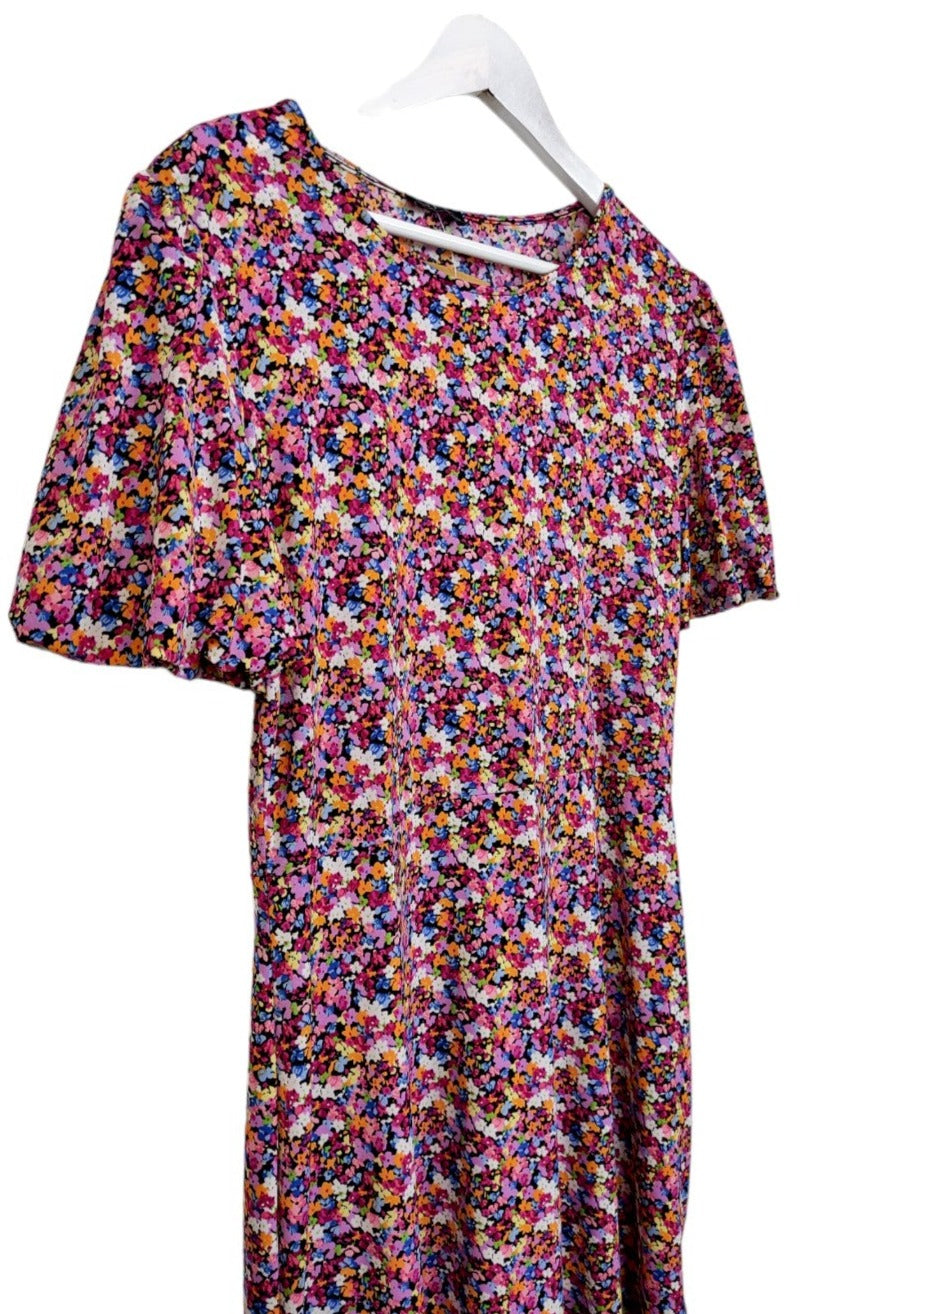 Φλοράλ, Ελαστικό Φόρεμα DUSK σε Ανοιξιάτικα χρώματα (M/L)